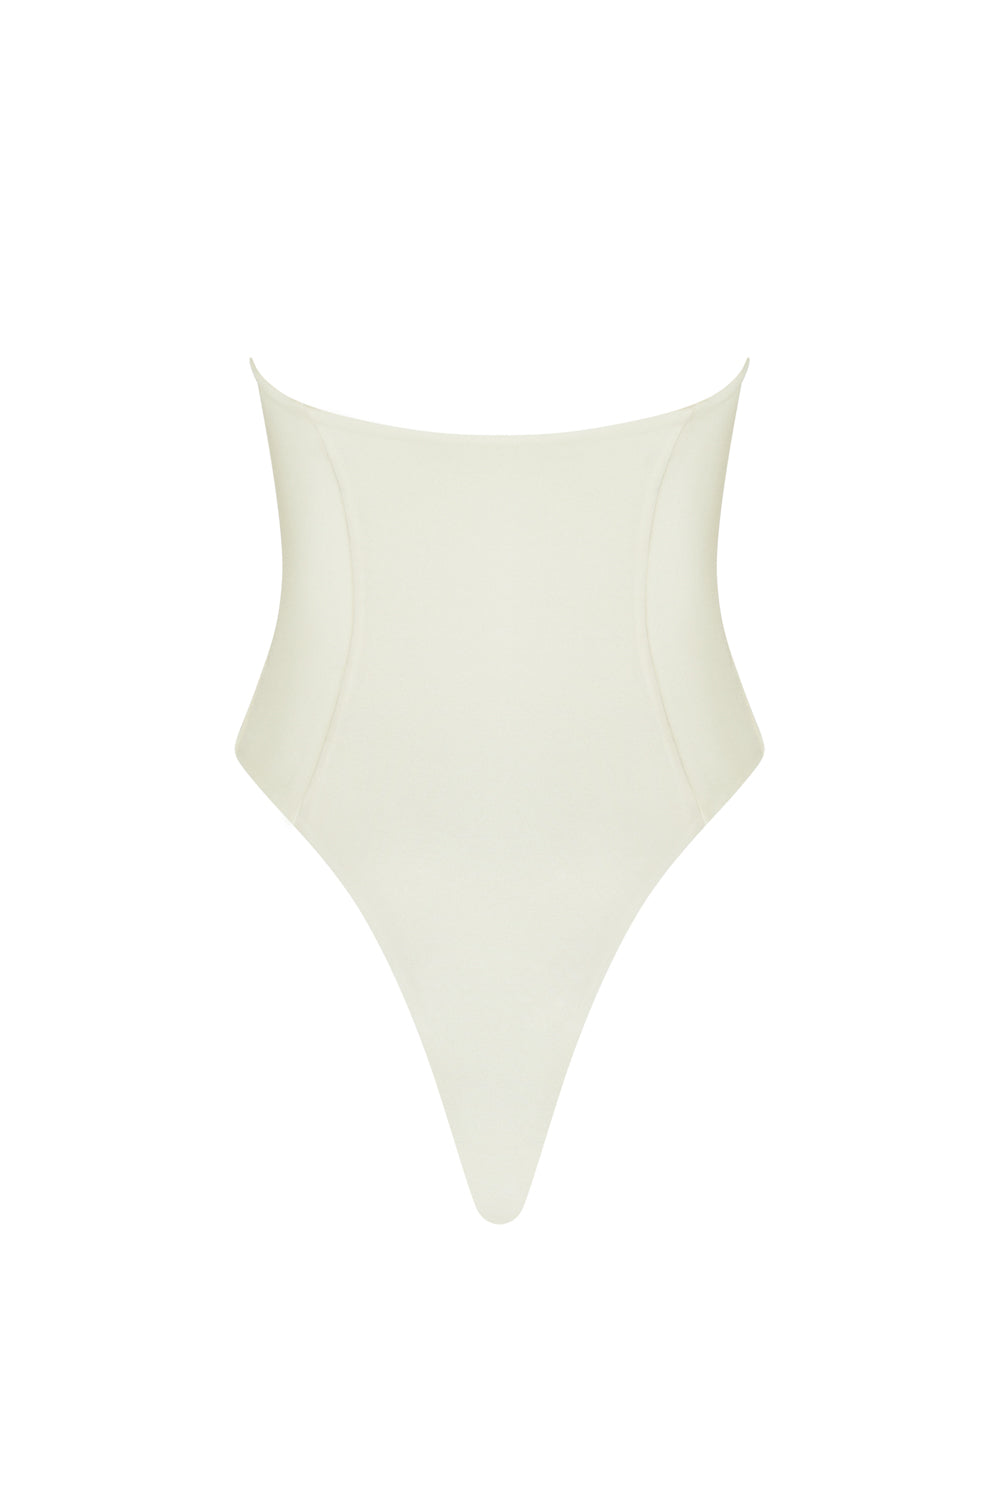 flook the label ella bendau swimsuit swimwear ivory product image back